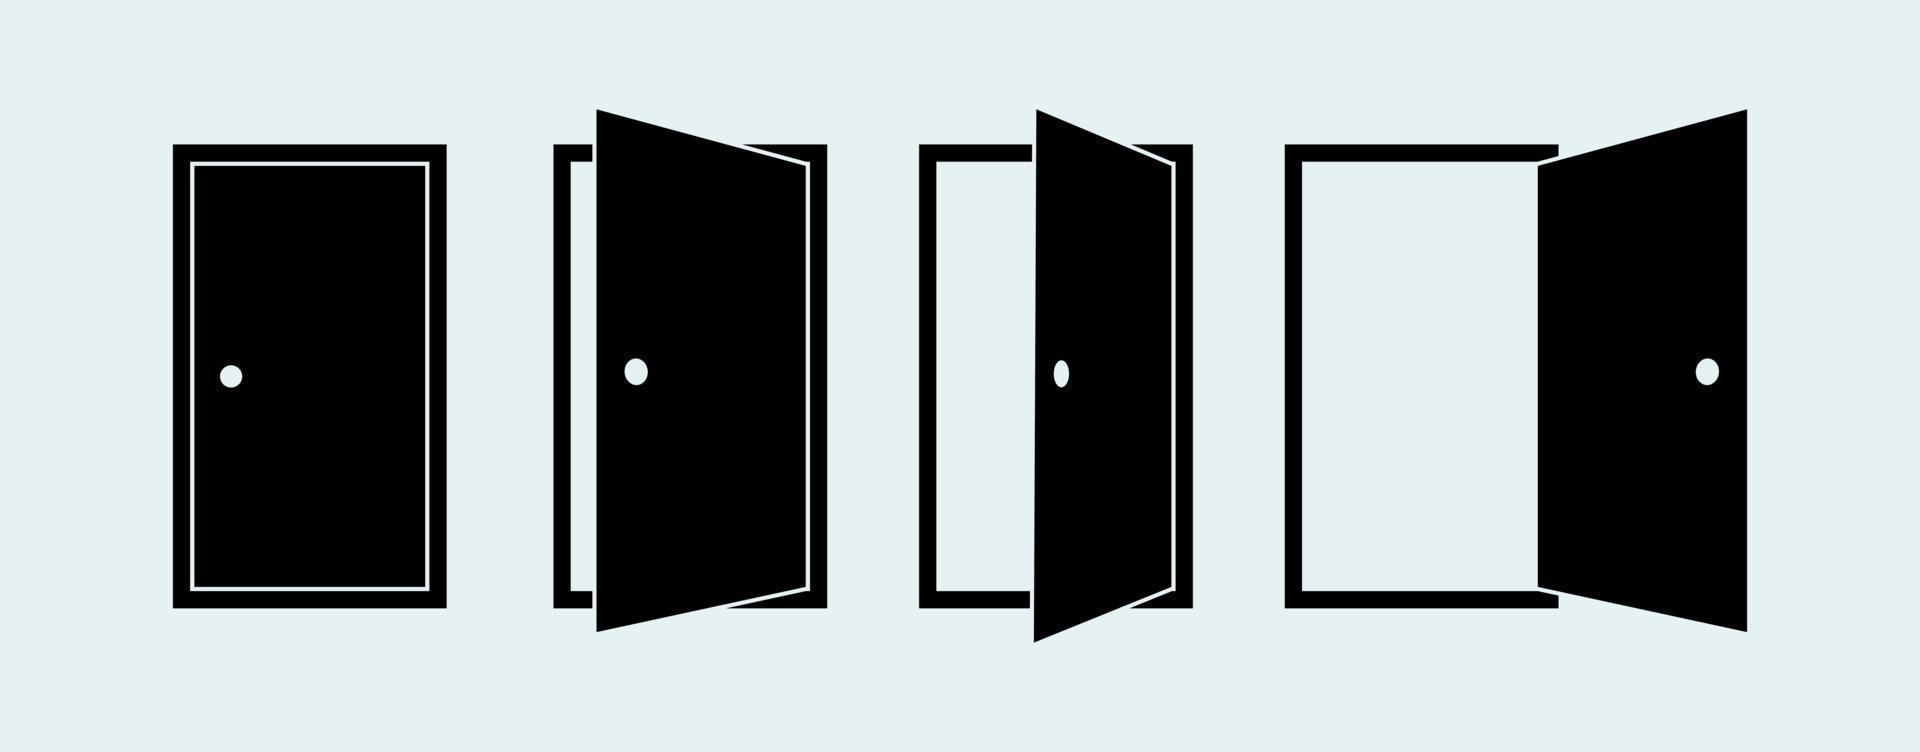 ouvrir et fermer le jeu d'icônes de porte. illustration d'icône de vecteur de silhouette de porte.